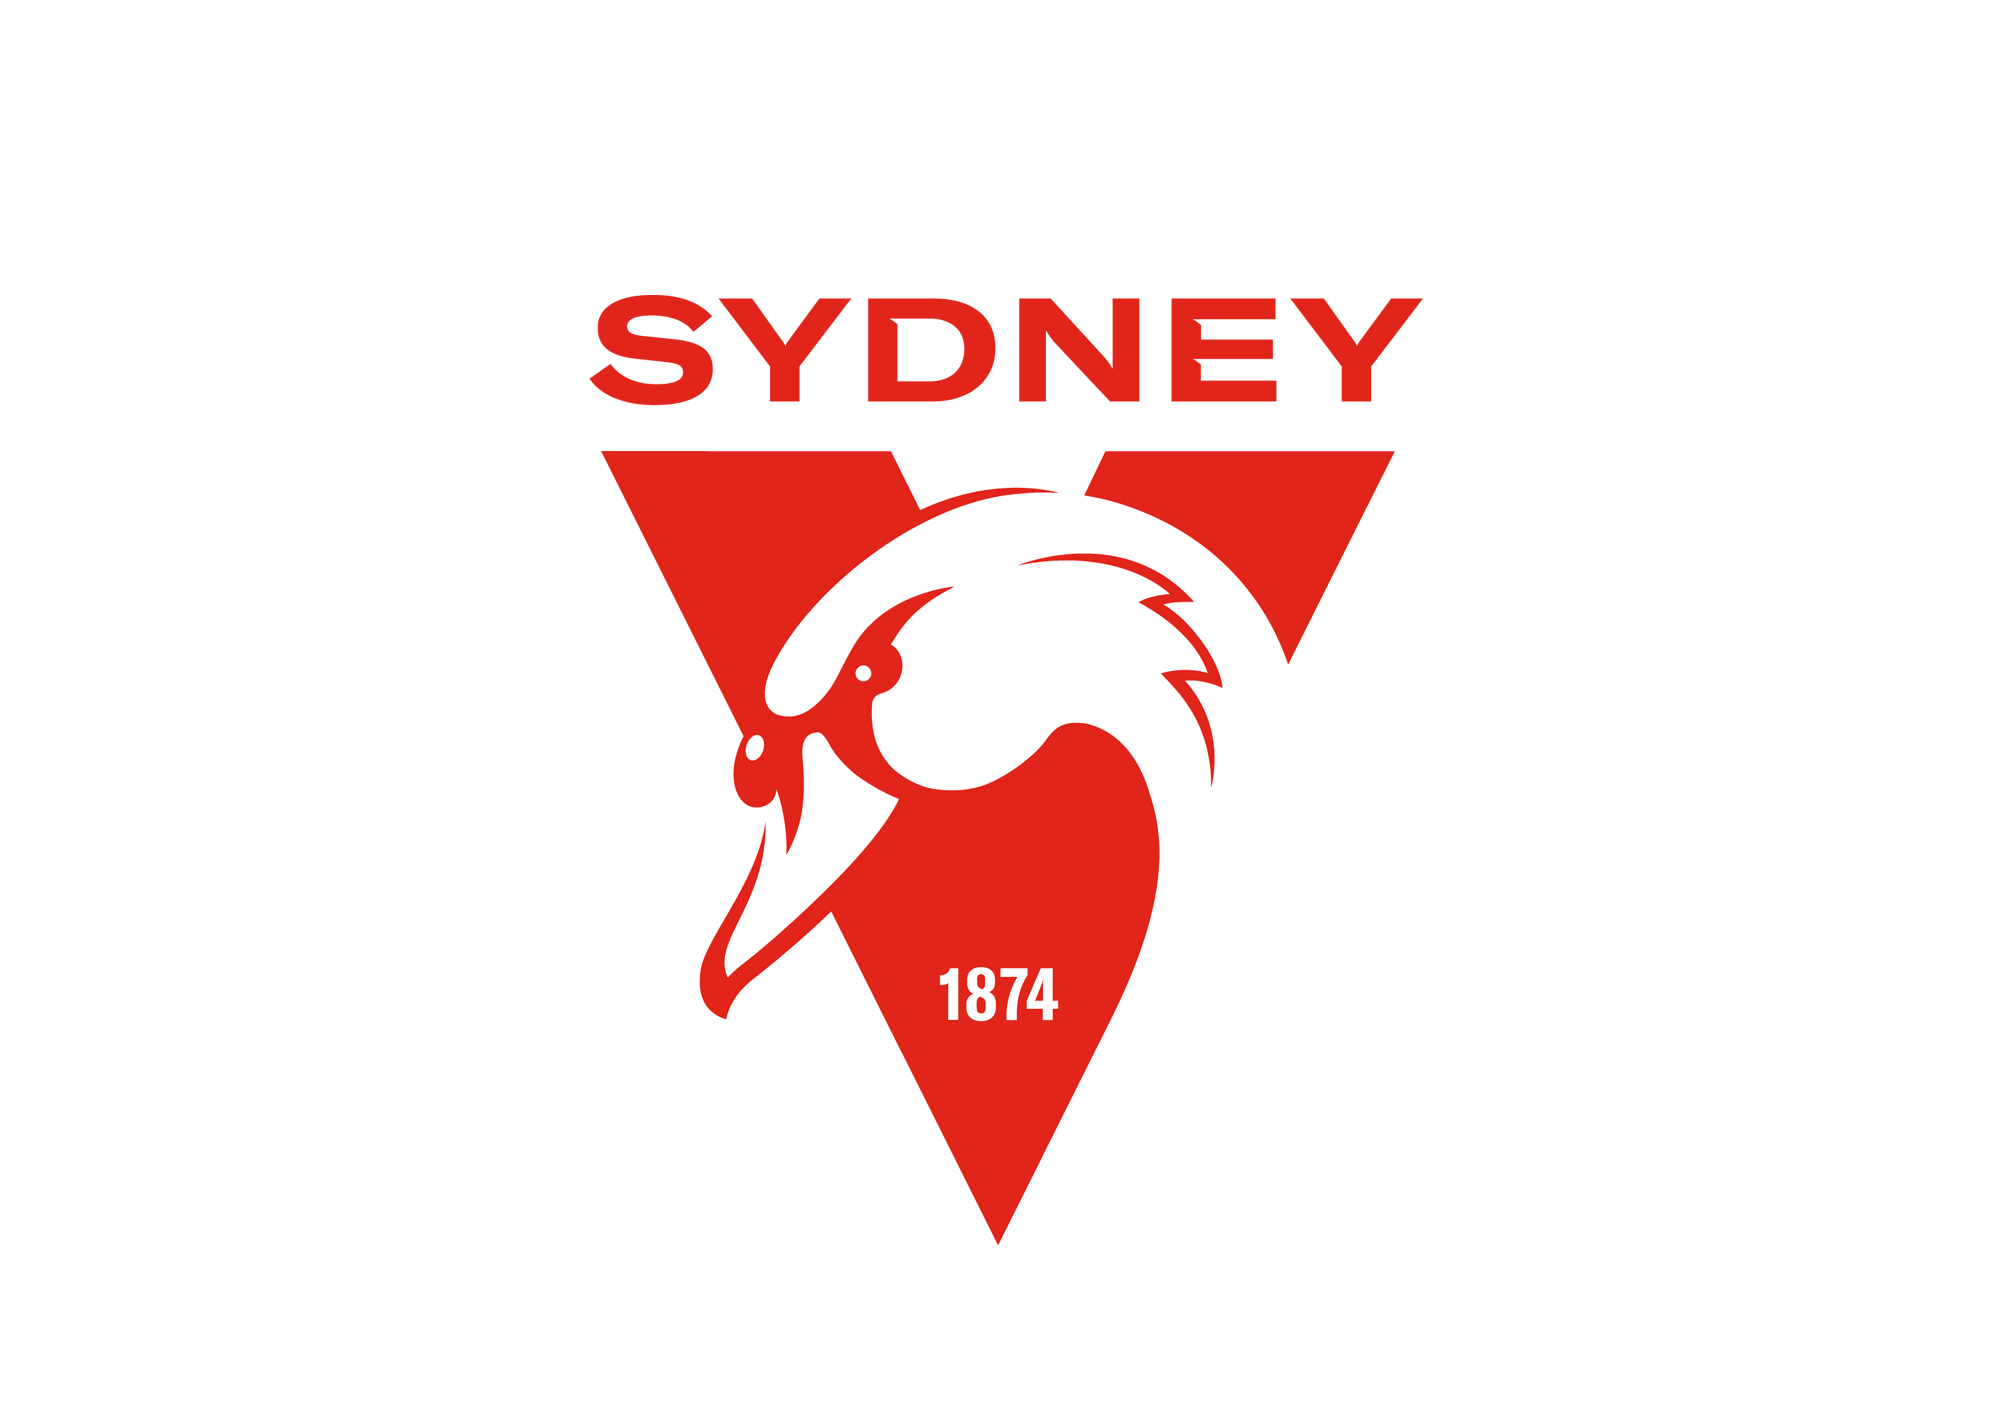 Sydney_Swans_Logo_2020_2000w.png